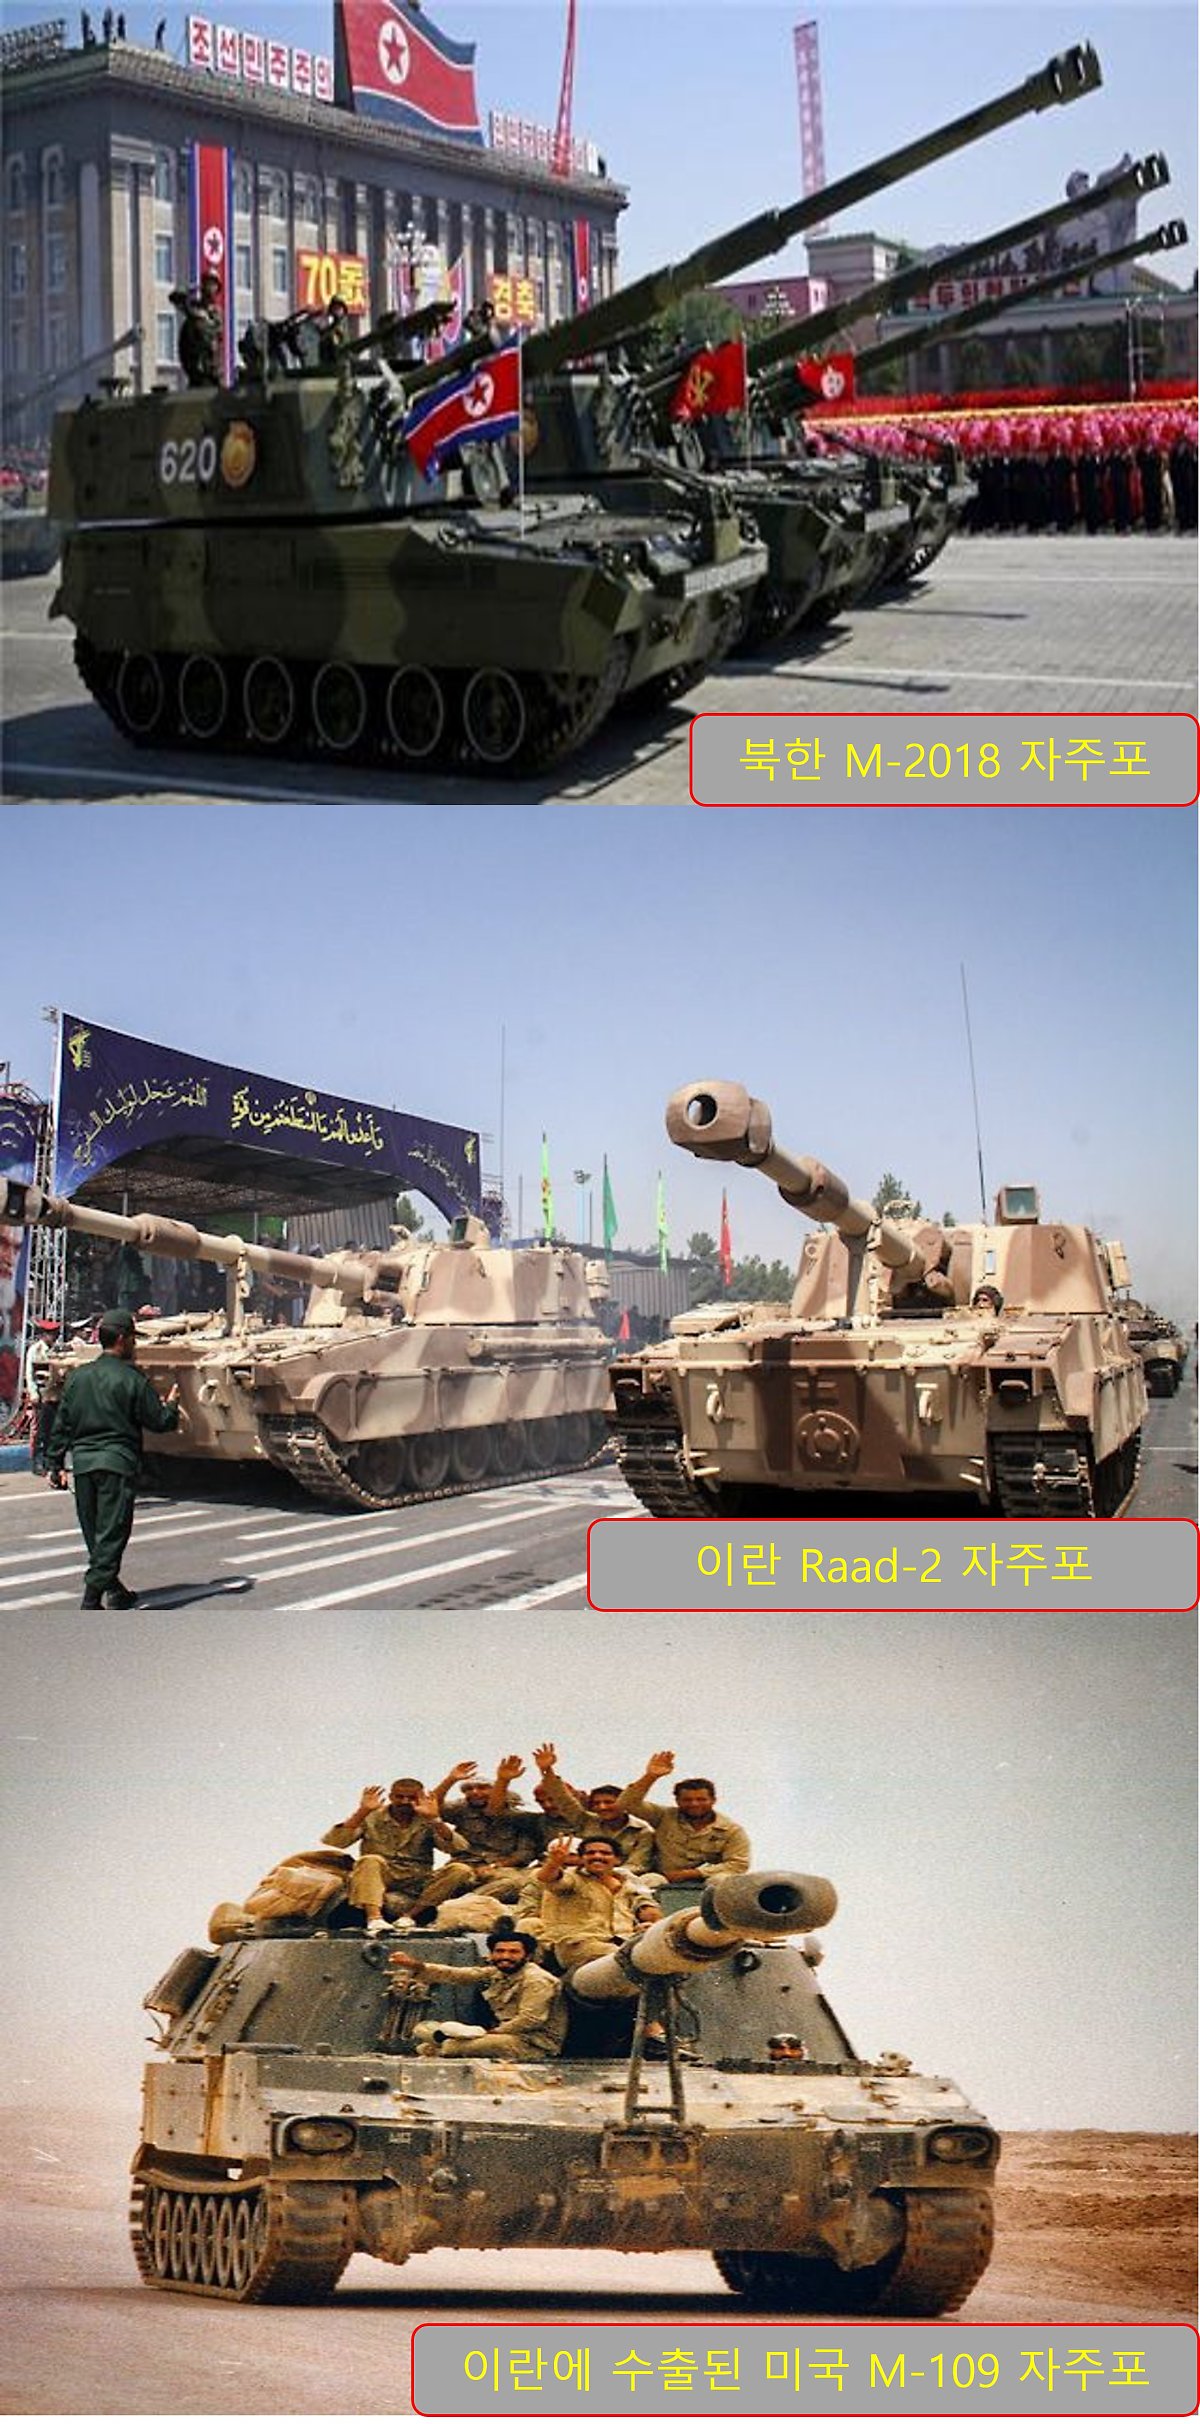 북한의 M-2018 자주포와 이란의 Raad-2 자주포, 미국의 M-109 자주포는 형상이 상당 부분 닮아있다. 이는 이란이 팔레비 왕조 시절 미국으로부터 수입한 M-109 자주포의 설계 사상에 이란과 북한이 영향을 받은 것을 반증한다. <출처: 조선중앙TV, Iran militaryForm.net 재구성 >